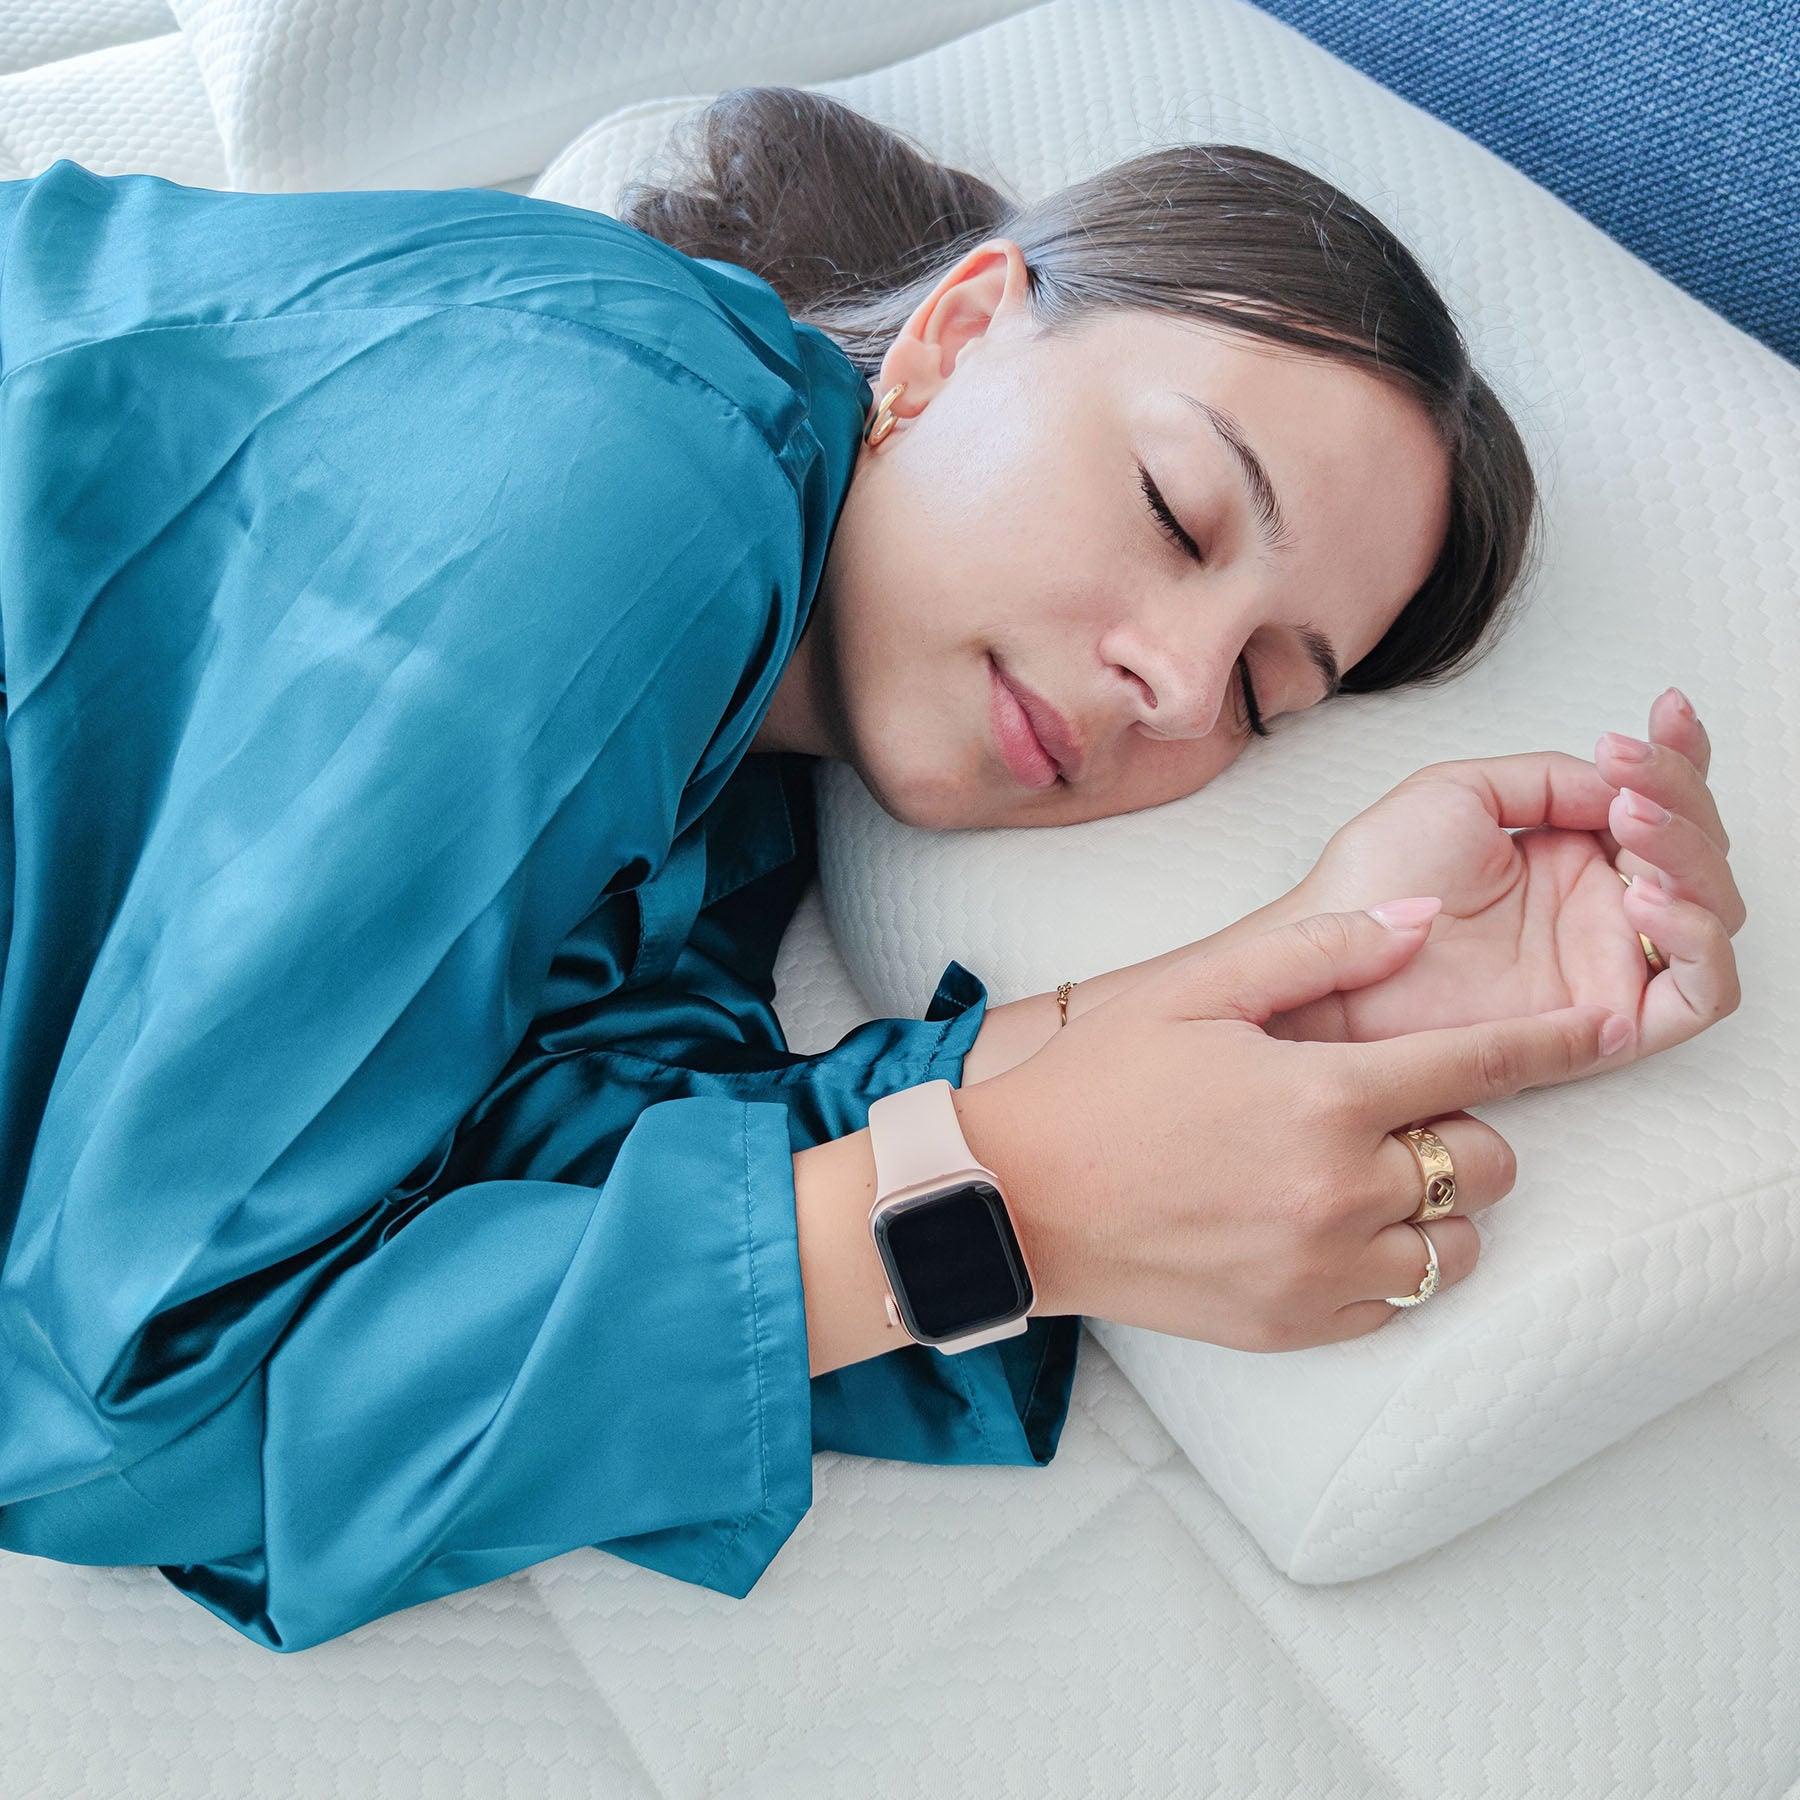 Dettaglio del cuscino Fiordilattice cervicale antirussamento di Beliamo, ideale per un sonno confortevole e senza disturbi